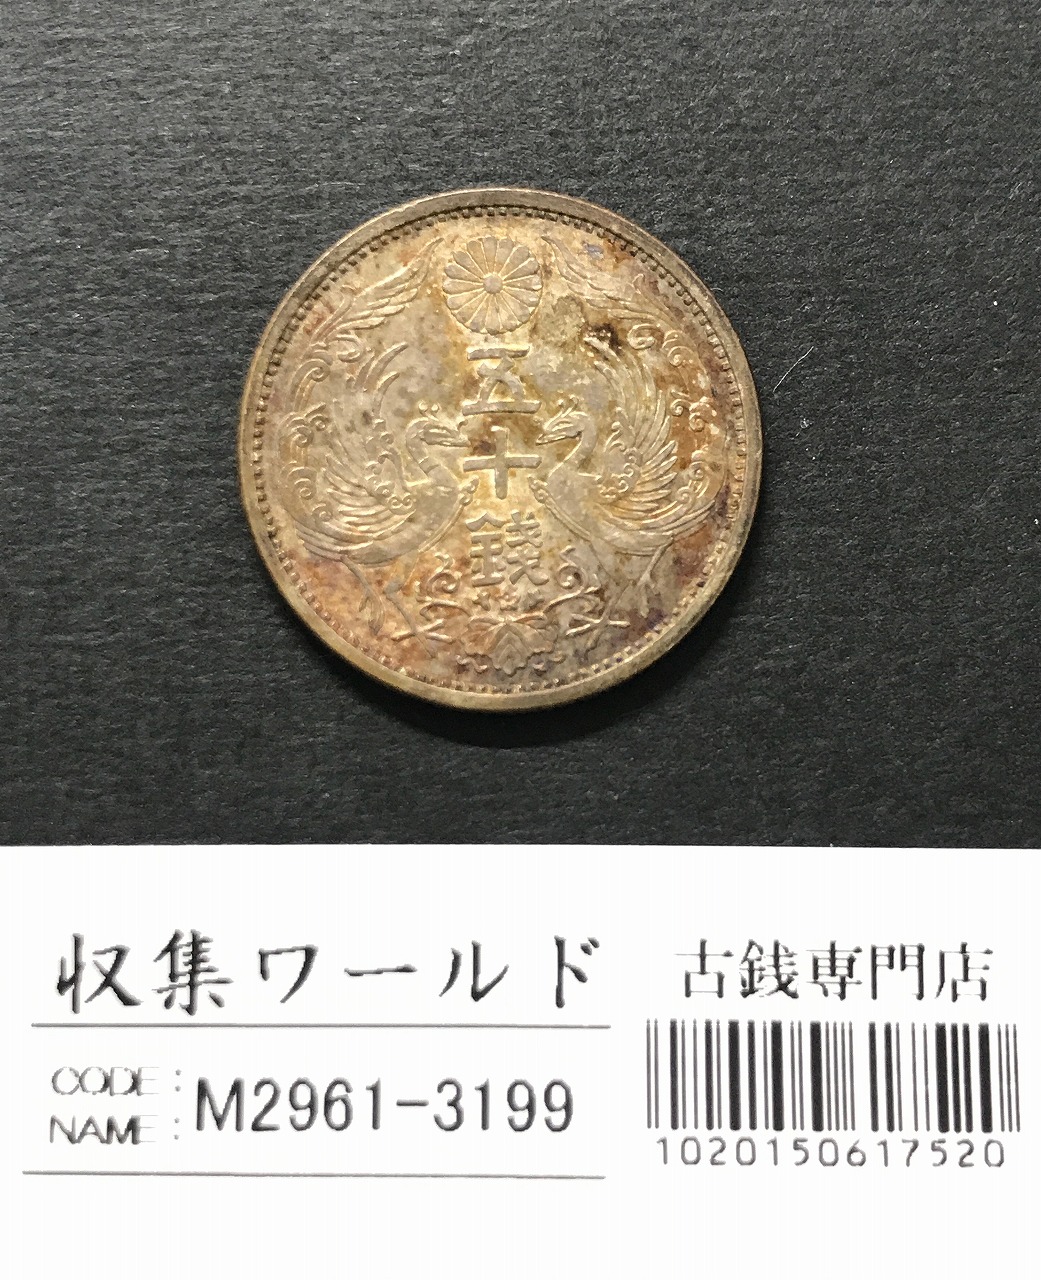 鳳凰 小型50銭銀貨 昭和7年銘(1932年) 近代小型銀貨 50銭 準未品